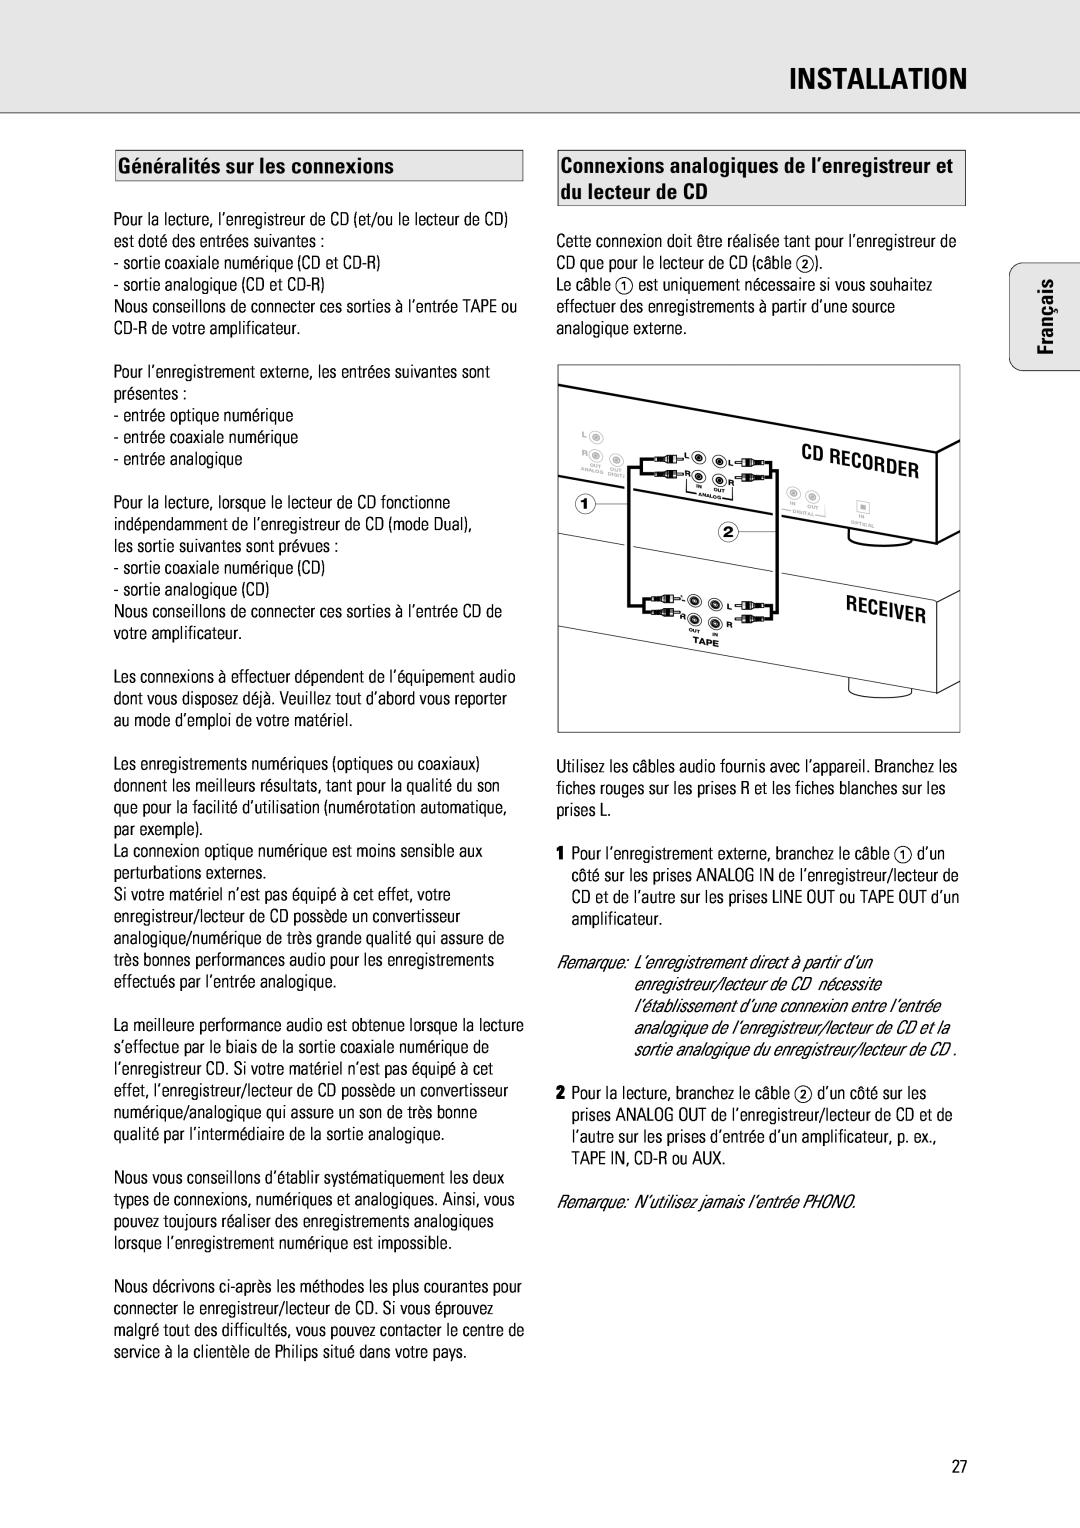 Philips 765 manual Généralités sur les connexions, Installation, Français, Recorder 